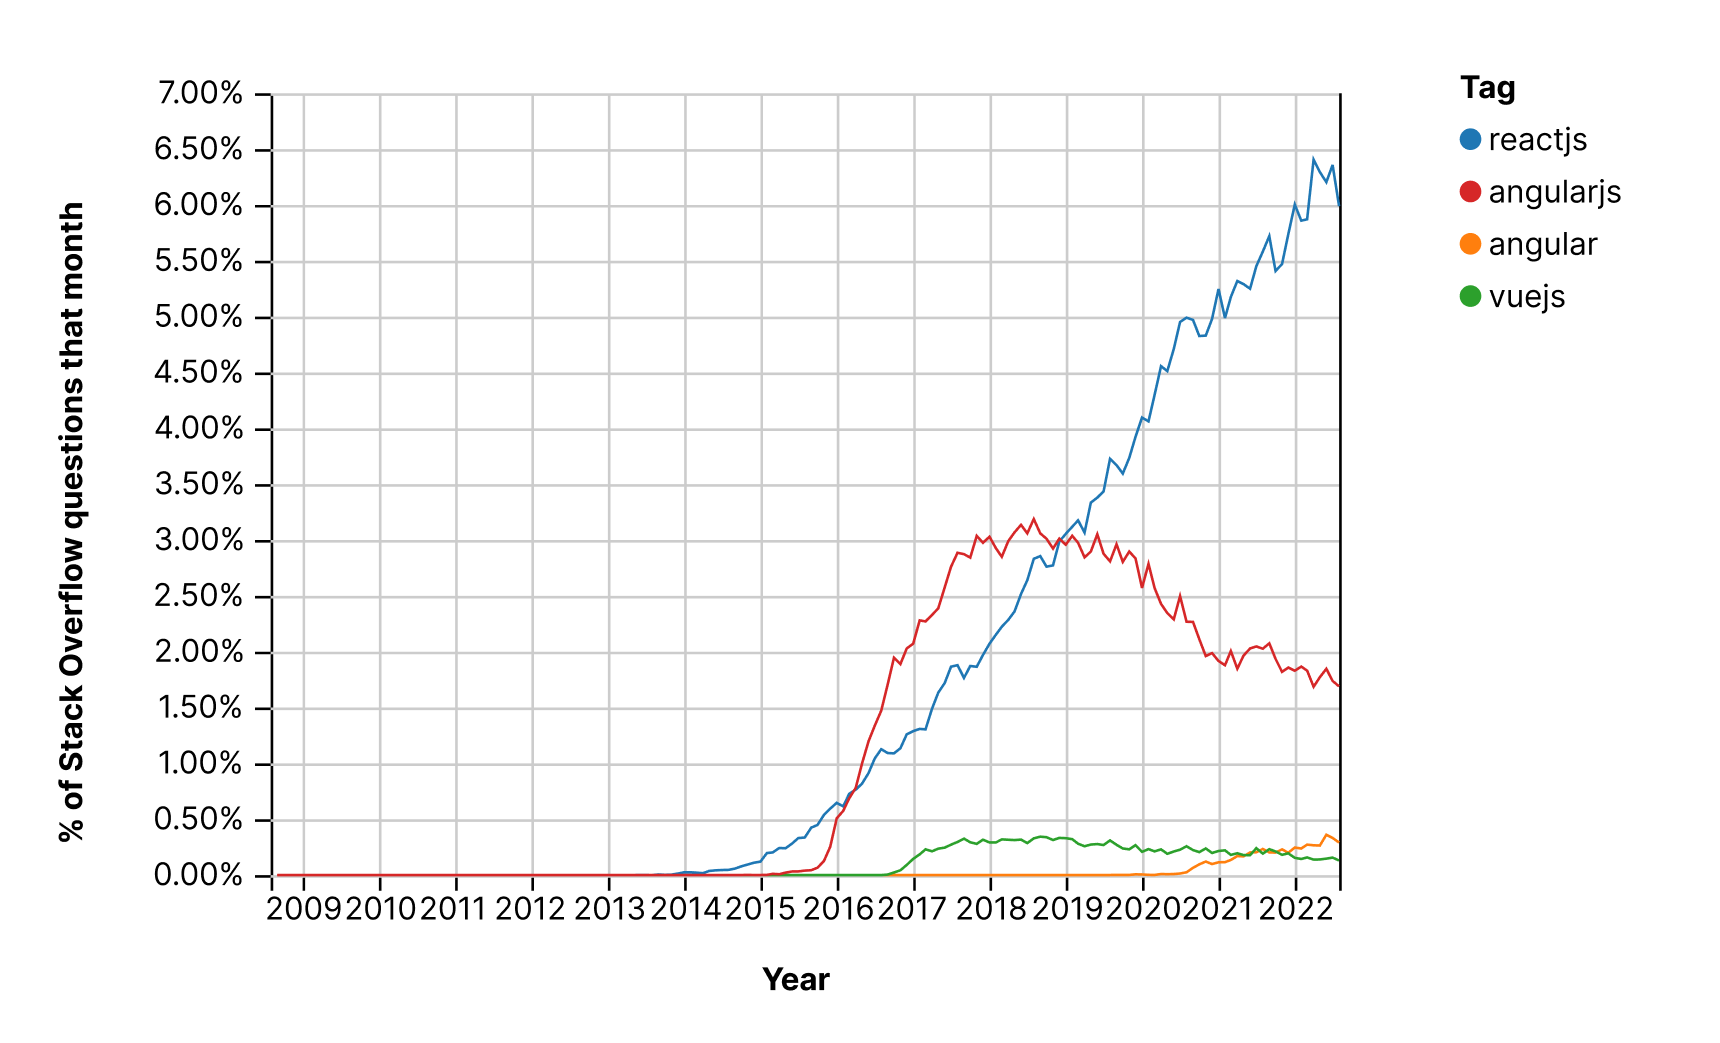 StackOverflow Trends for ReactJs Vs VueJs Vs AngularJs